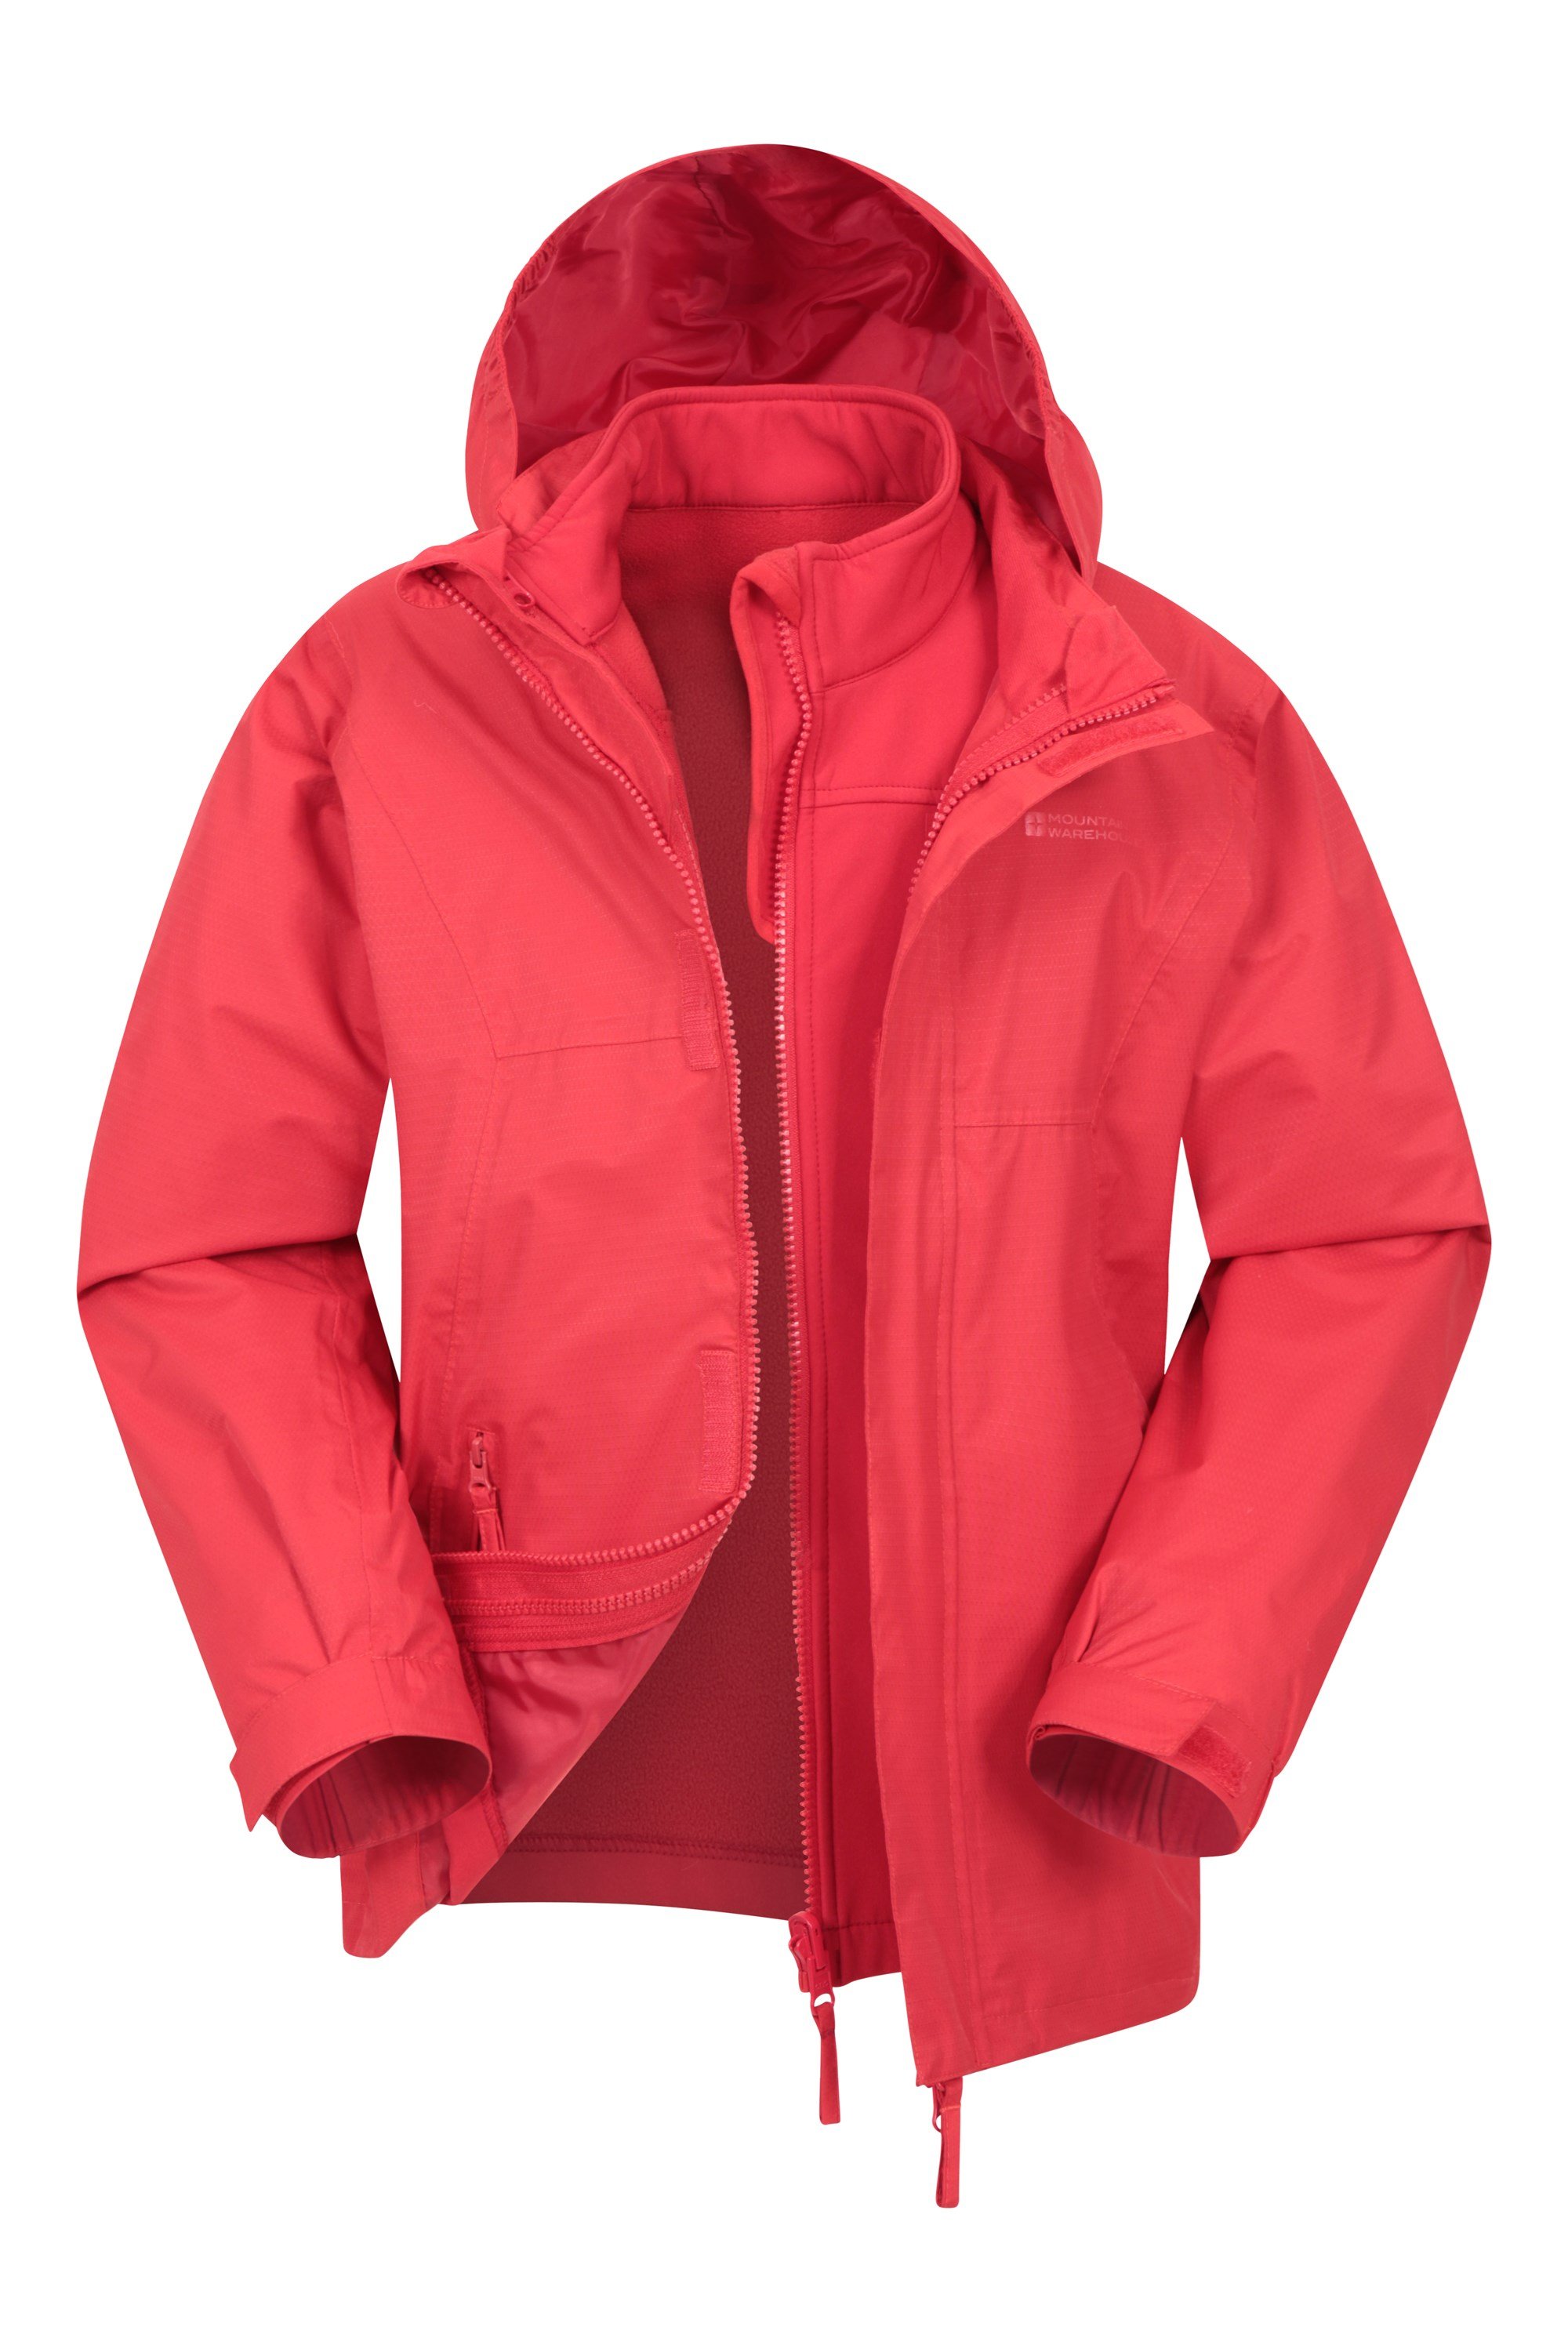 Mountain Warehouse Snowdonia Kinder-Hoodie Keine Fusselbildung schnell trocknend Winter Mikrofleece-Jacke für Mädchen und Jungs für Reise und im Freien 